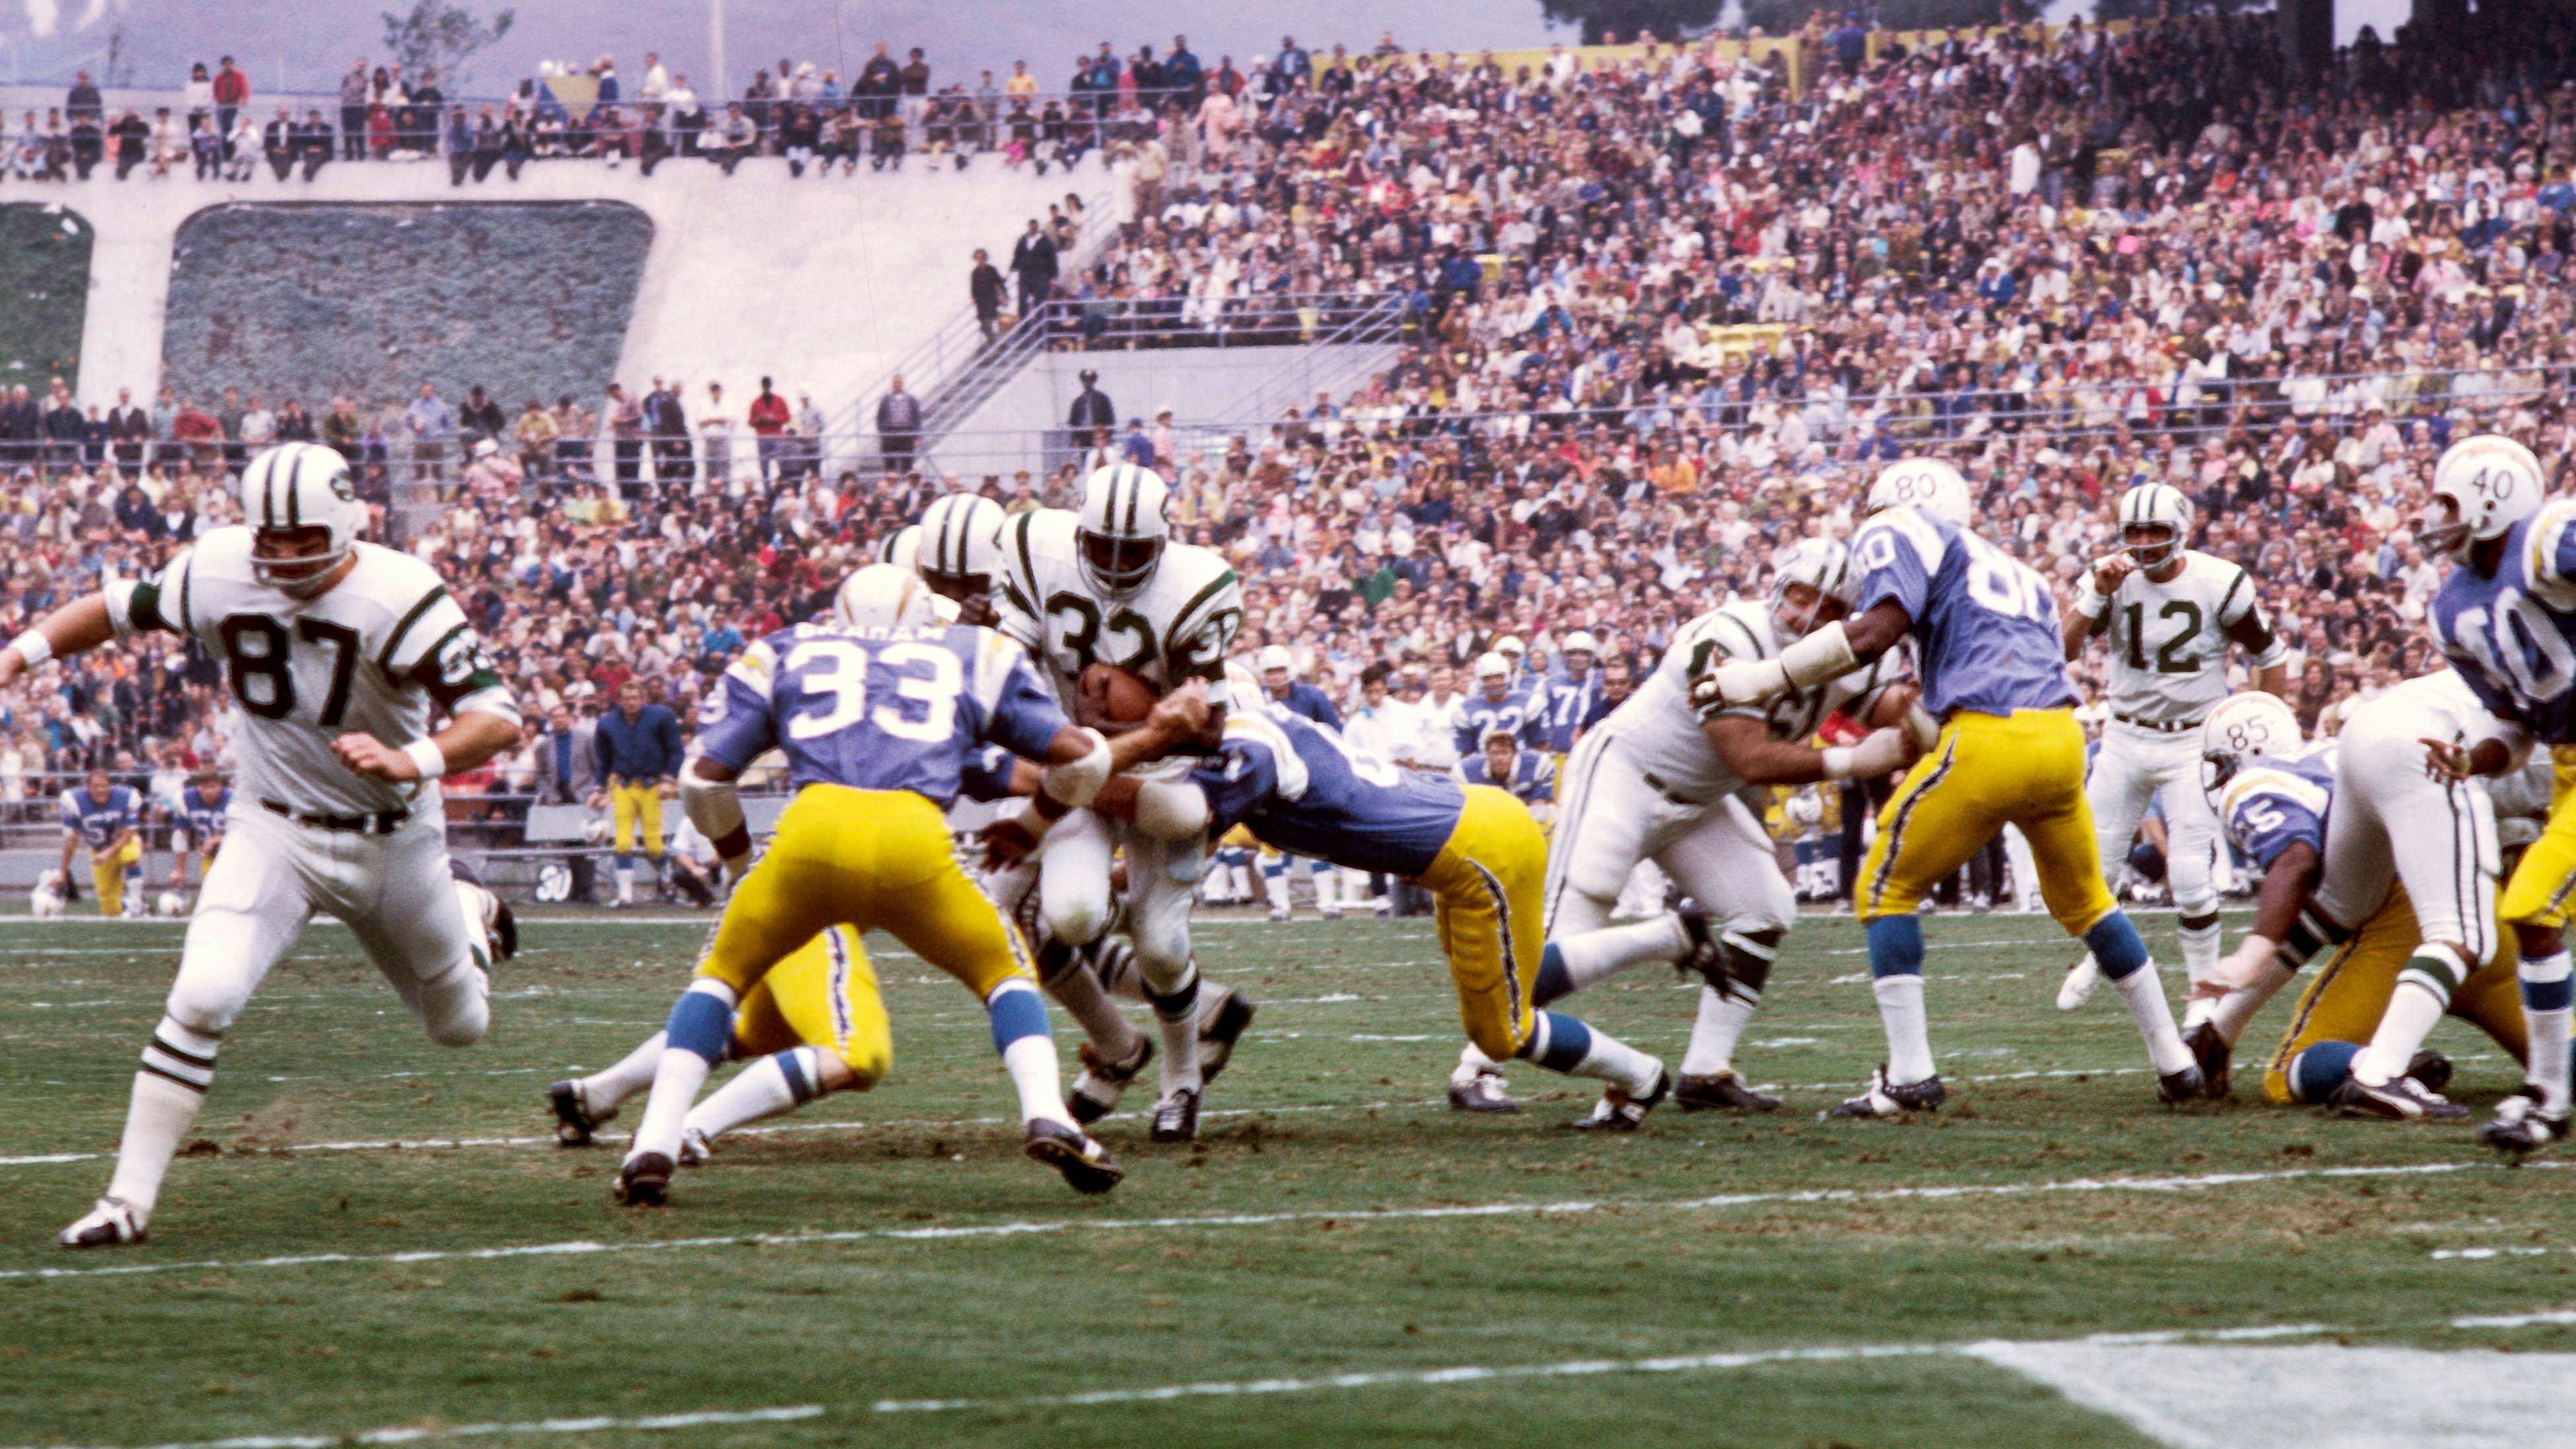 <strong>Platz 1: New York Jets von 1968 (Bilanz: 11-3, Super-Bowl-Champions, Head Coach: Weeb Ewbank)</strong><br>Den ersten Sieg eines Teams aus der kleineren AFL gegen das&nbsp; favorisierte Team (Baltimore Colts) der großen NFL im dritten Super Bowl betrachtet "Sports Illustrated" als den größten Meilenstein in der Geschichte des Profi-Football in den USA. Joe Namath, Quarterback der Jets, prognostizierte den Sieg seines Teams und sollte Recht behalten.